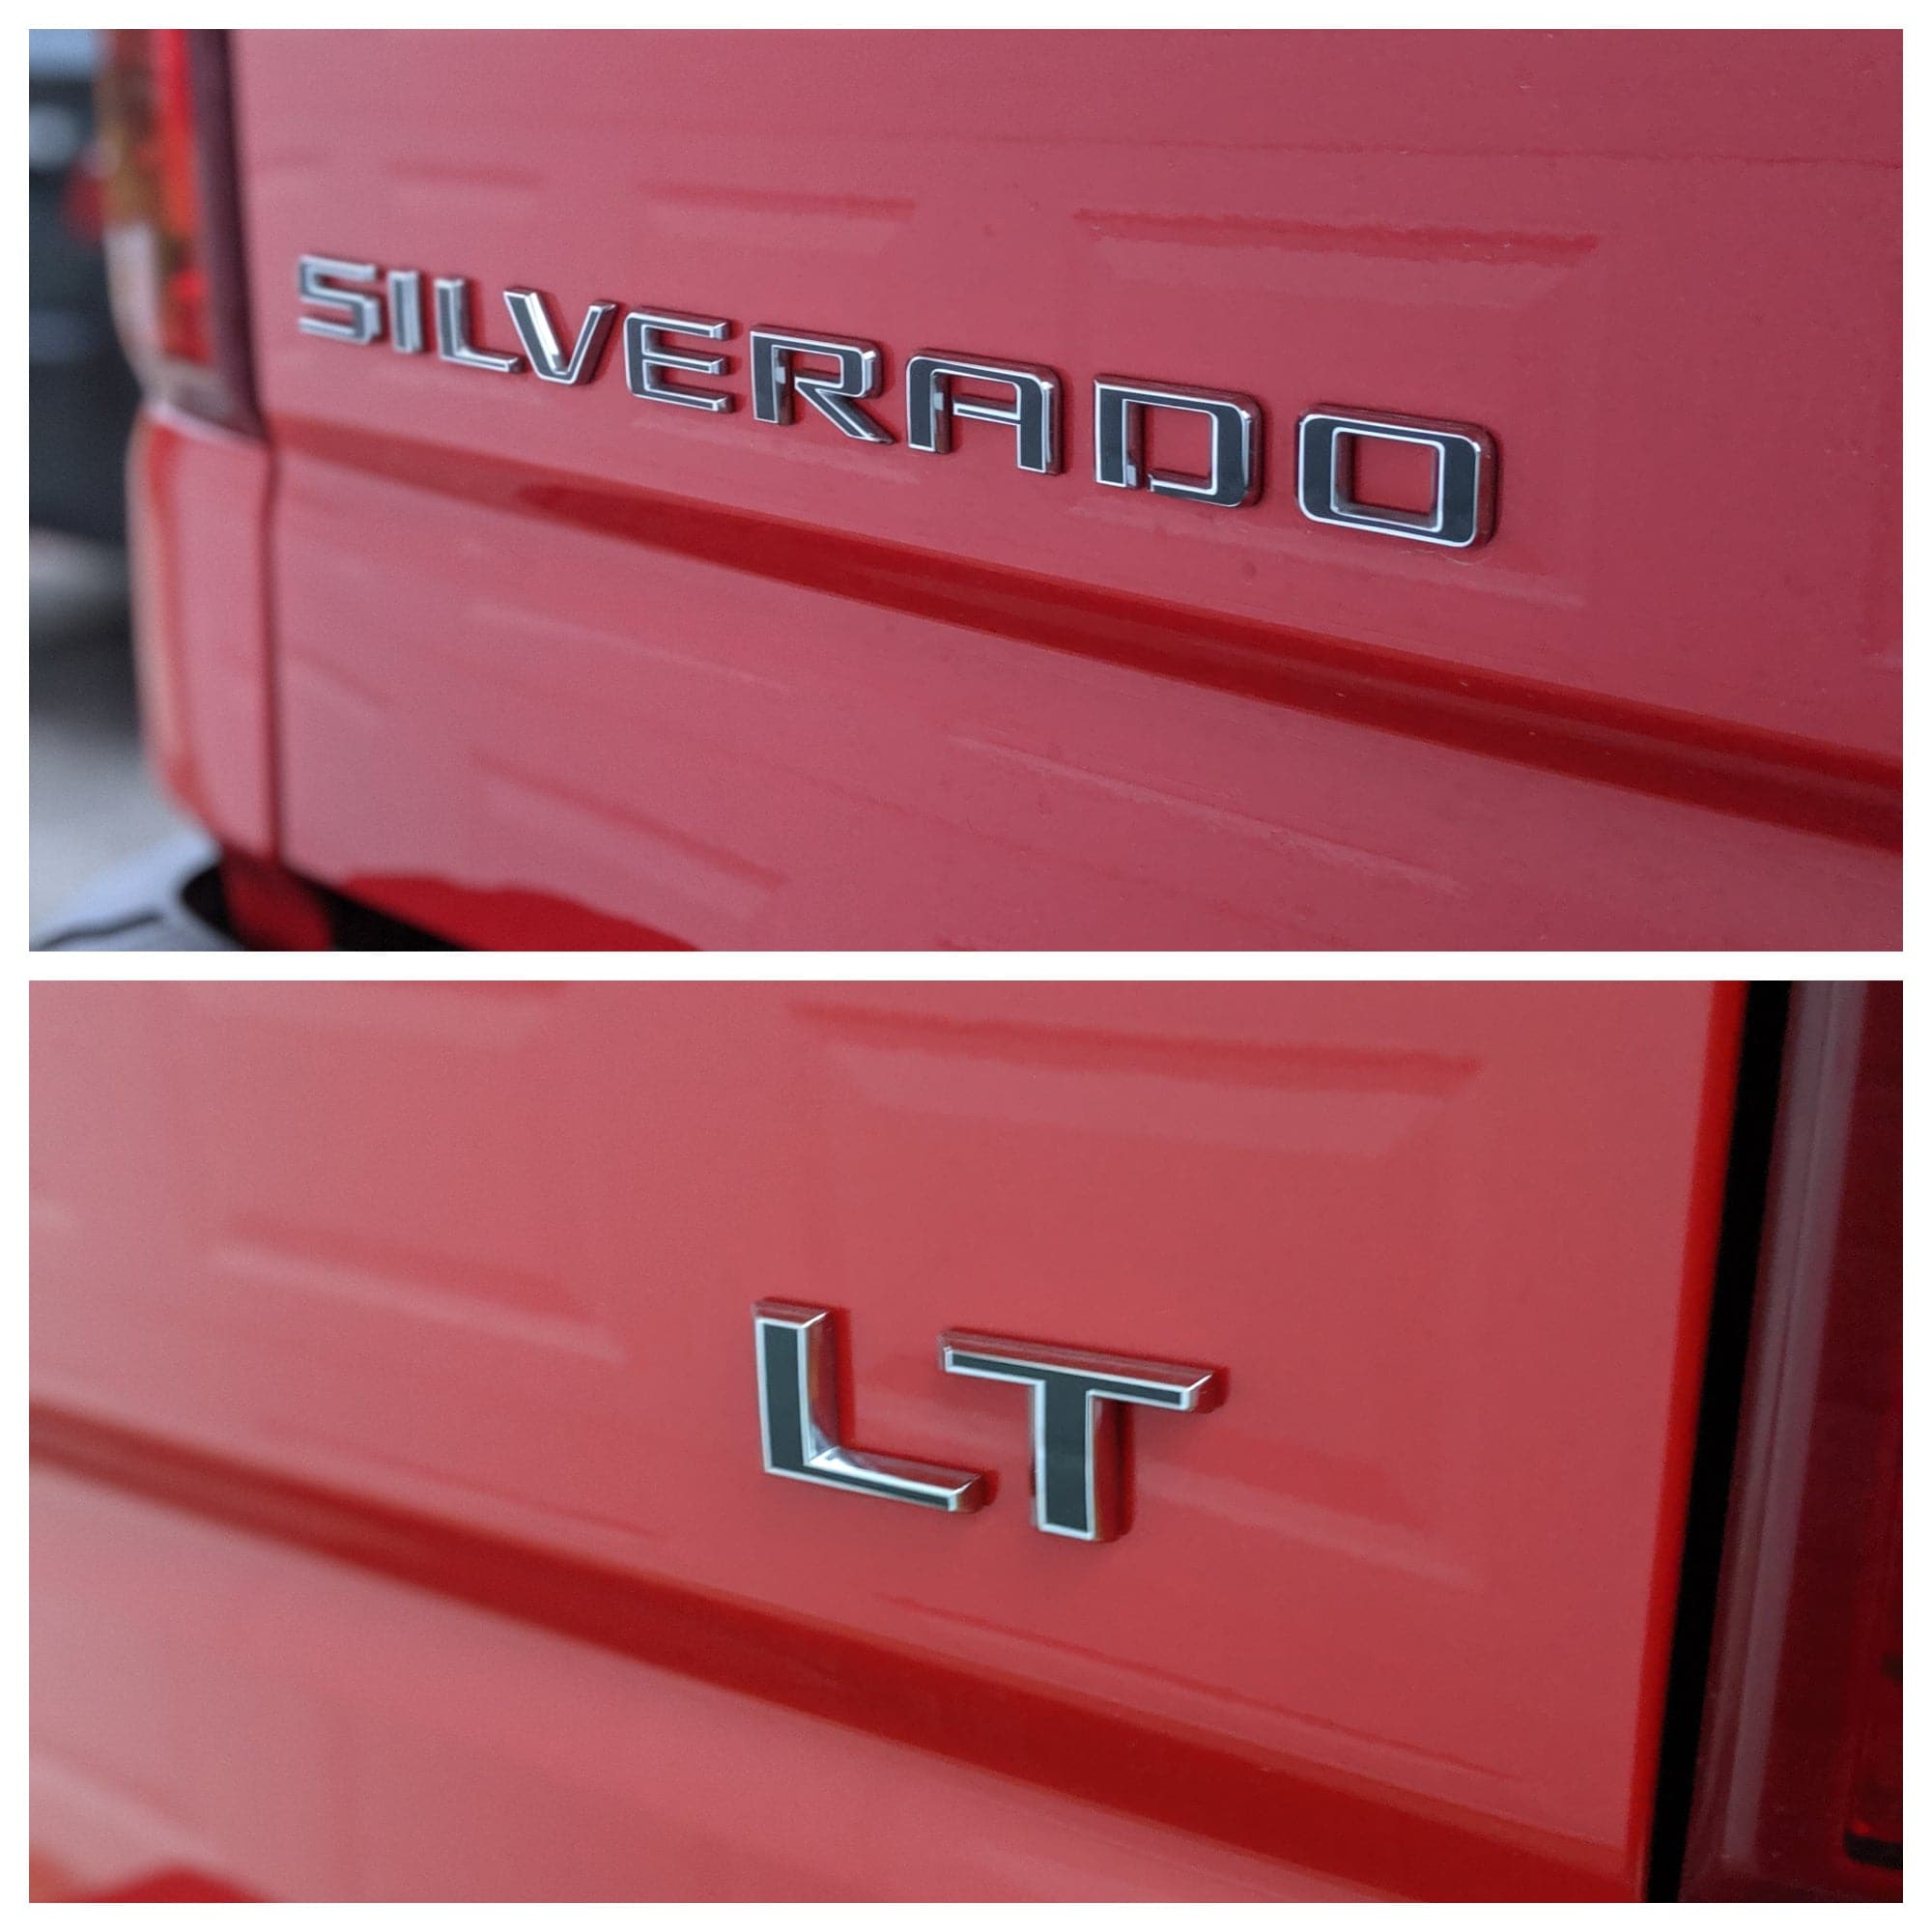 2019+ (4th Gen) Chevrolet Silverado - Rear Silverado and LT Emblem Overlays Combo